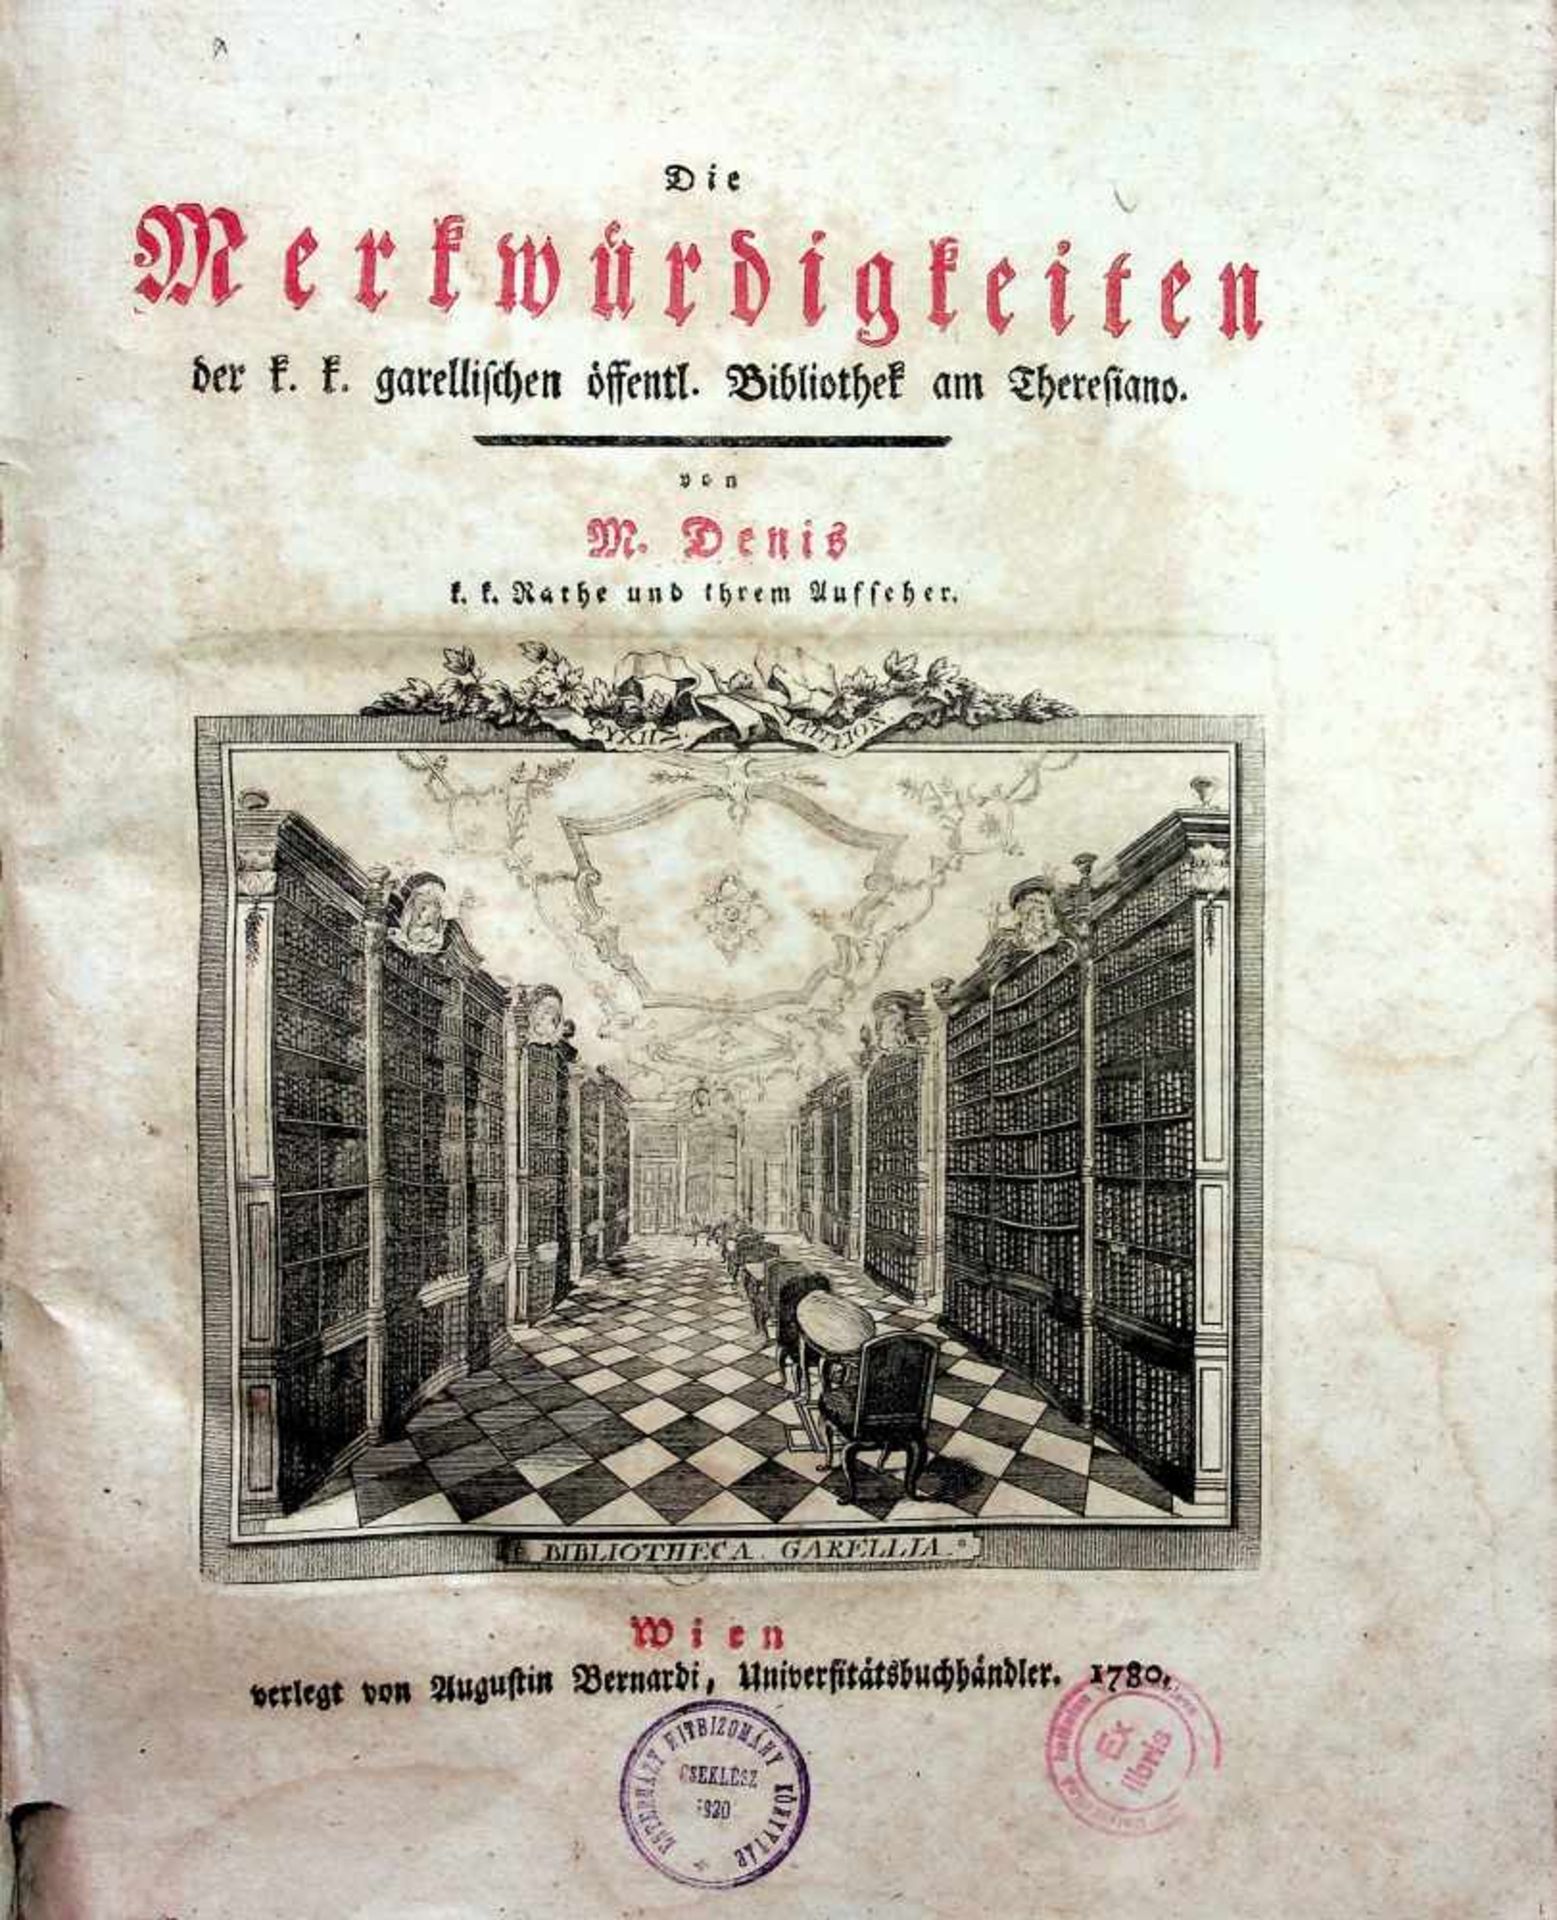 Denis, M(ichel).Die Merkwrdigkeiten der k. k. garellischen”ffentl. Bibliothek am Theresiano.